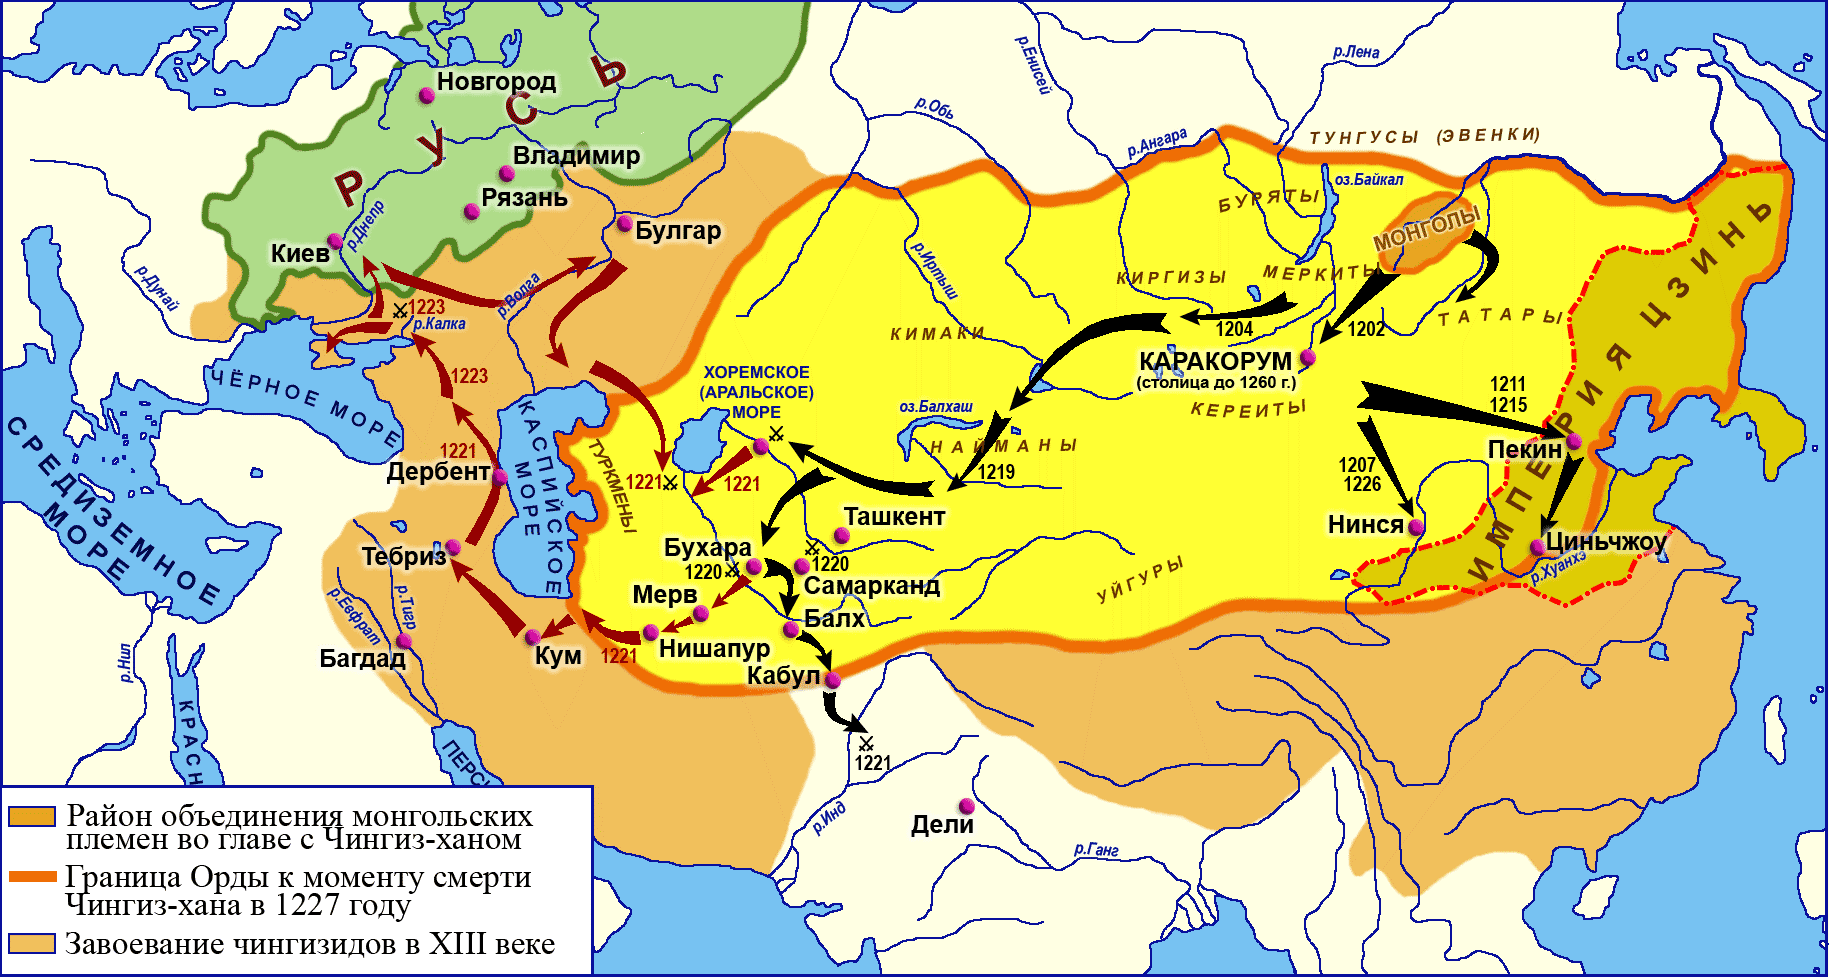 Карта 1. Завоевание монголов